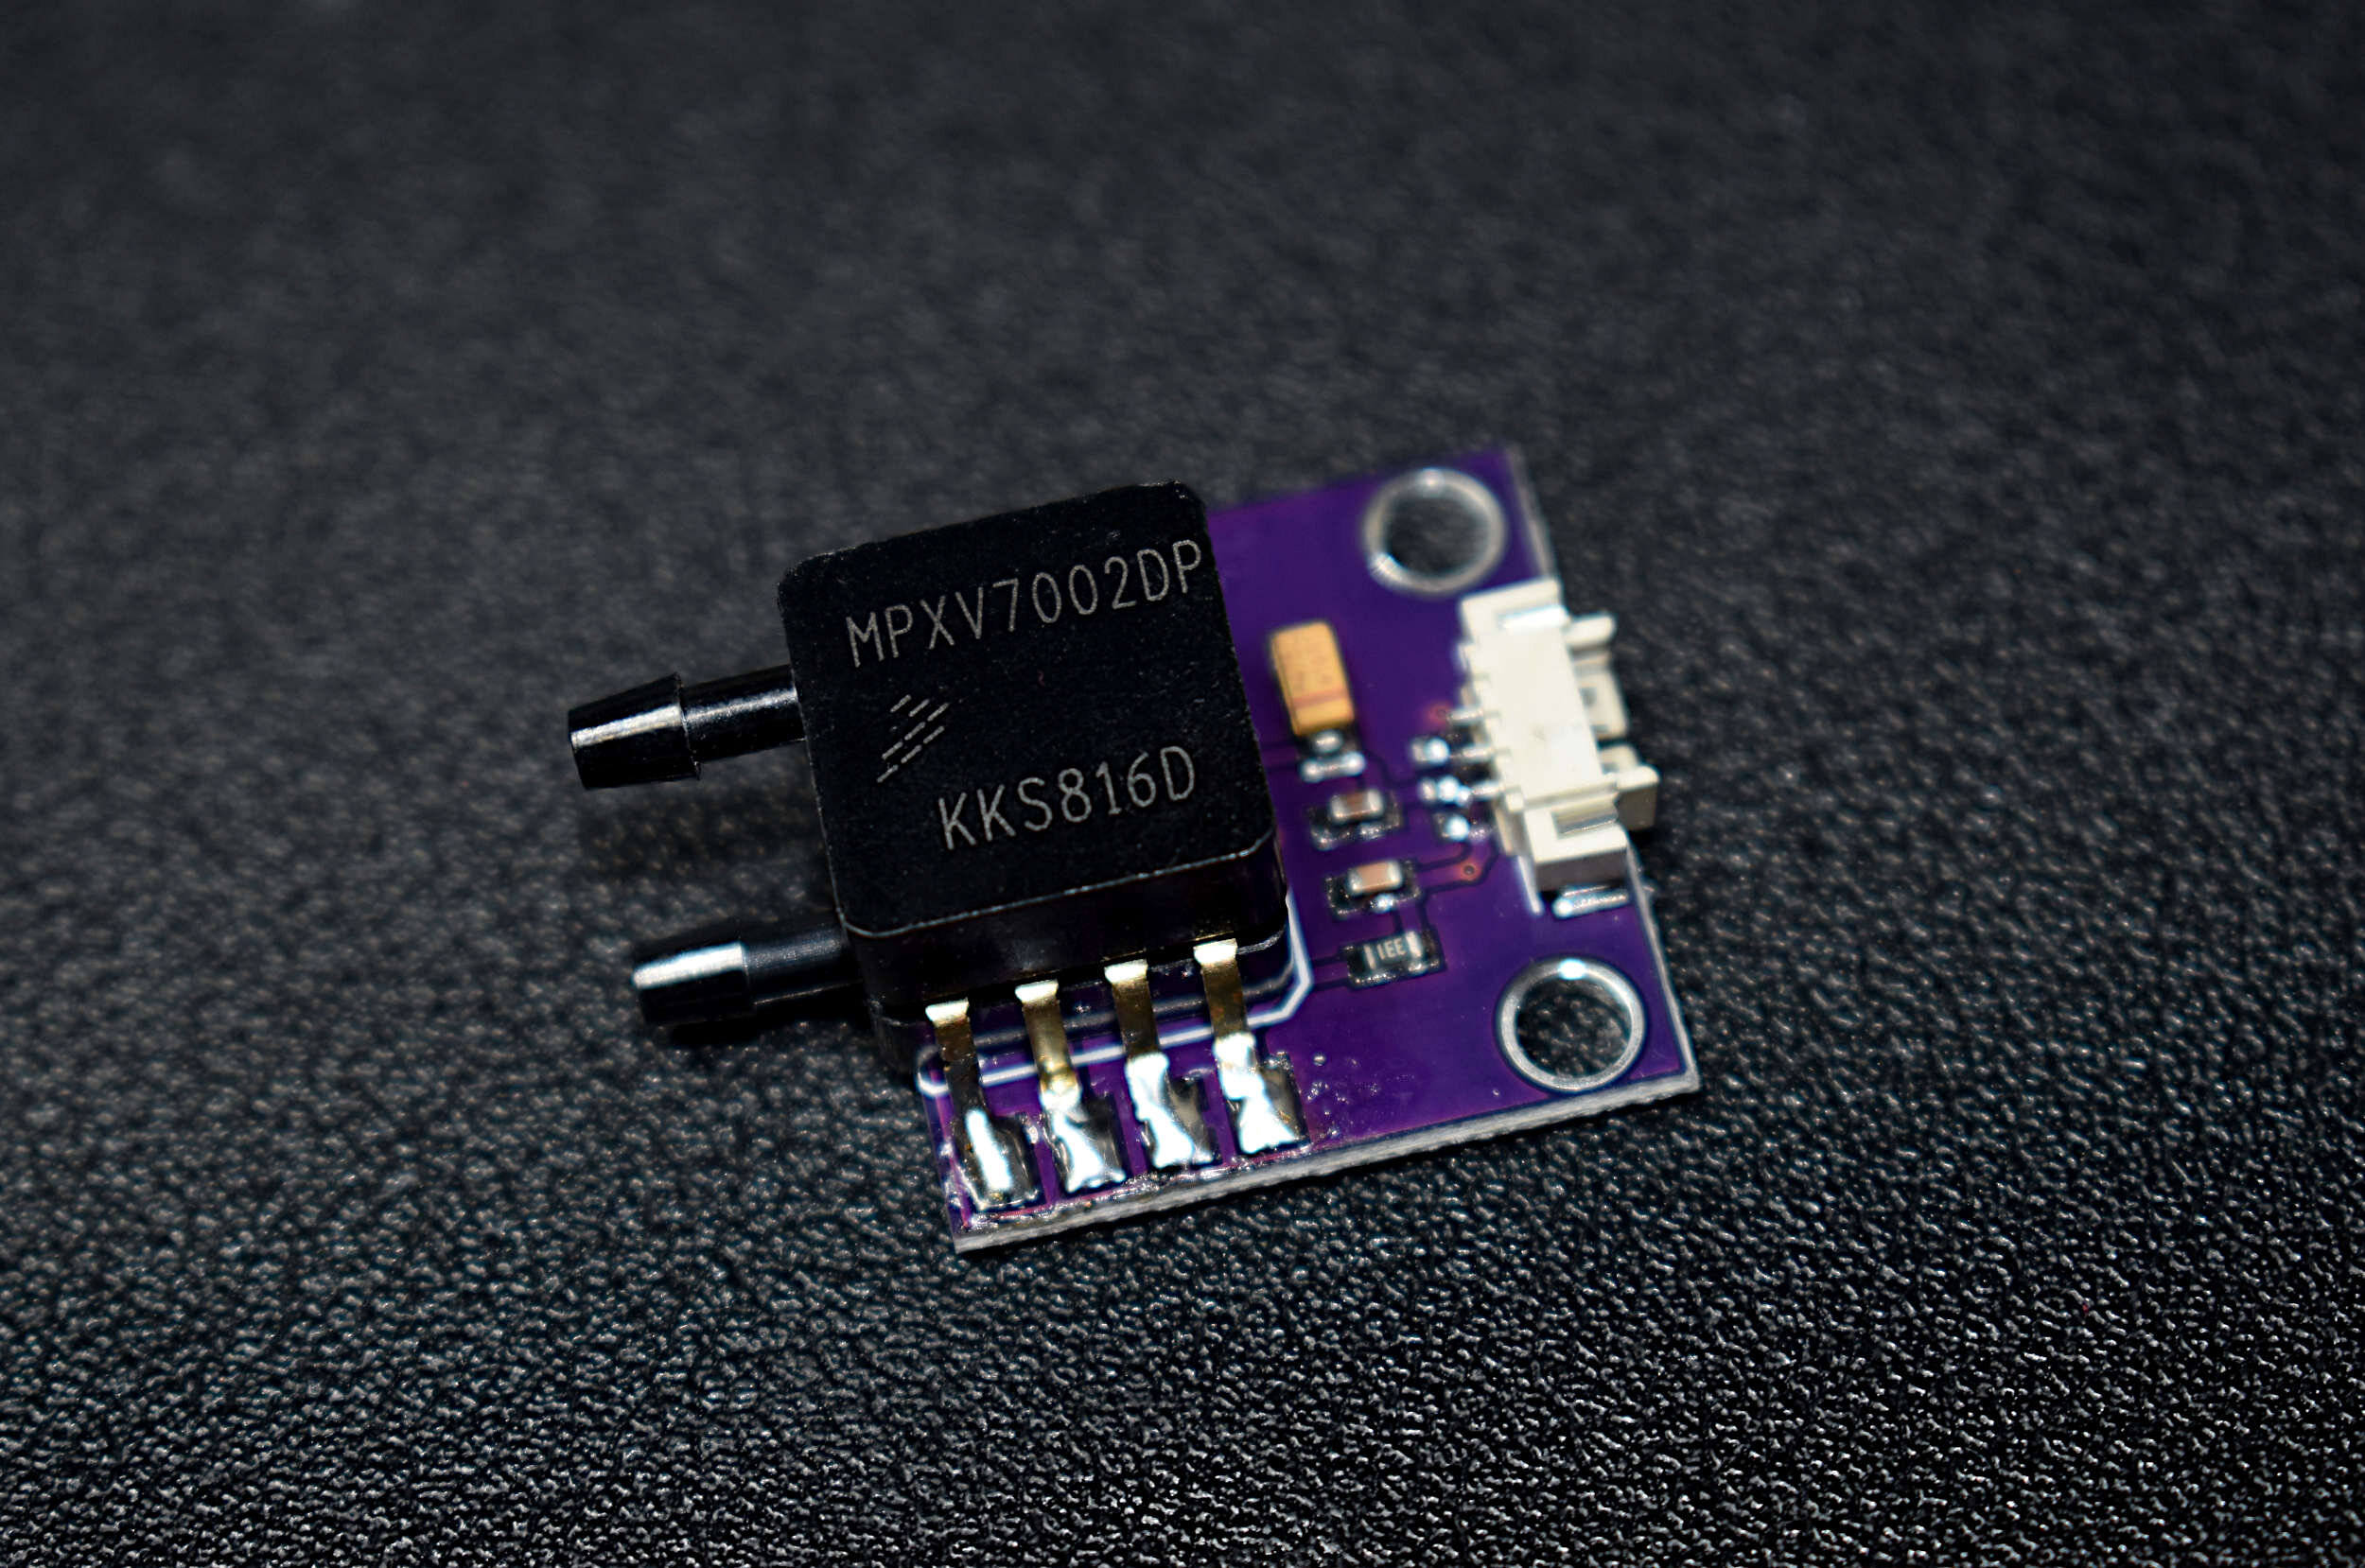 Capteur MPXV7002DP transducteur de carte de composants électriques pour microcontrôleurs pour détection de pression